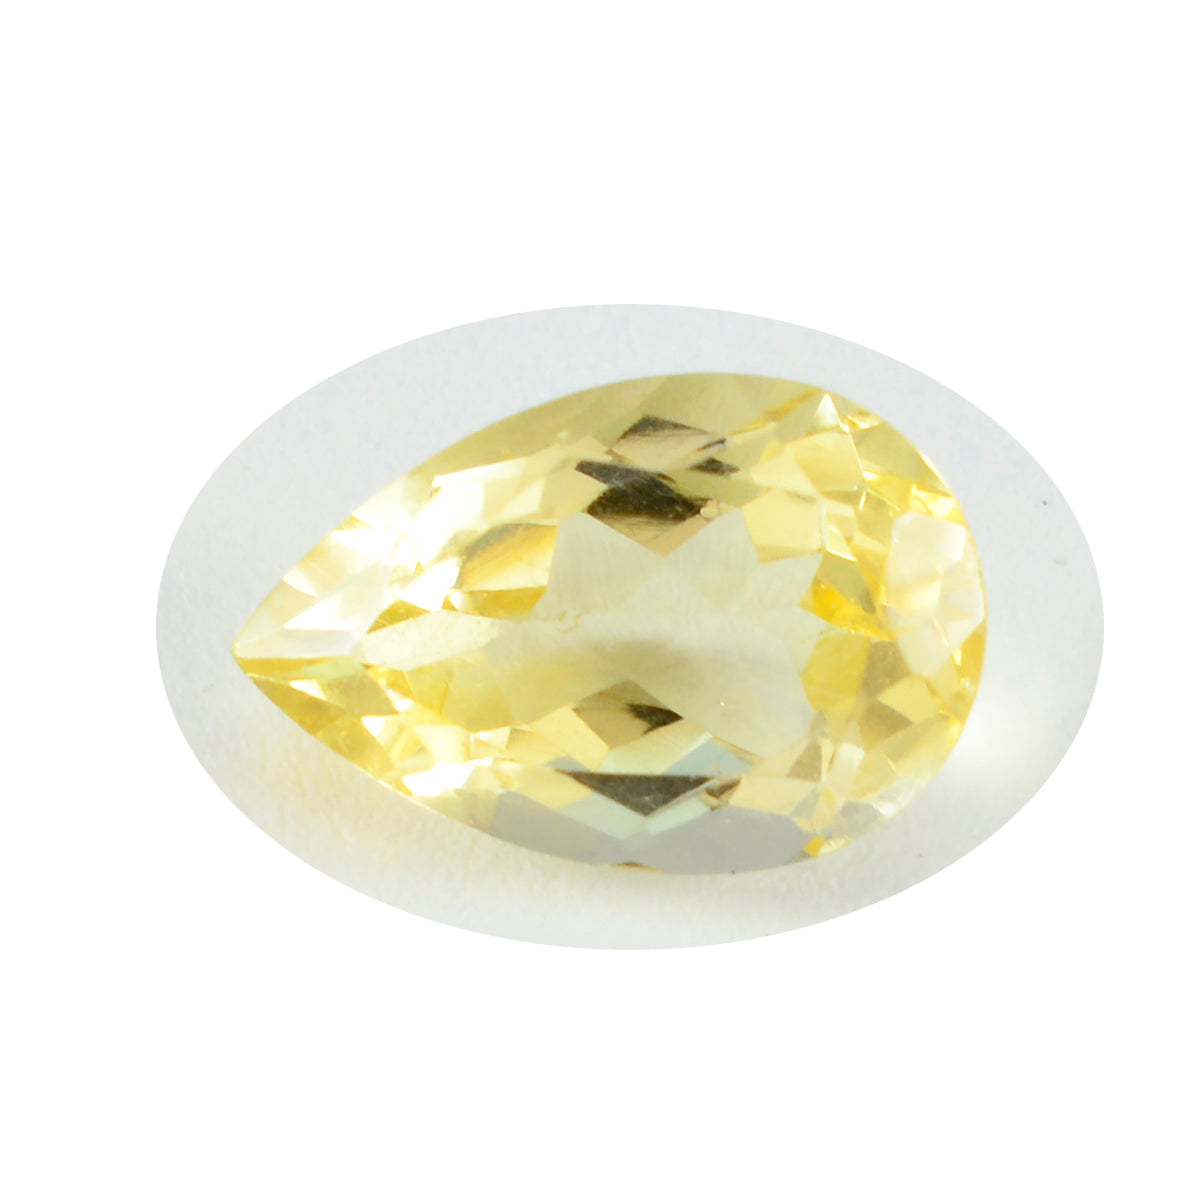 riyogems 1шт натуральный желтый цитрин ограненный 12x16 мм грушевидная форма сладкий качественный сыпучий драгоценный камень